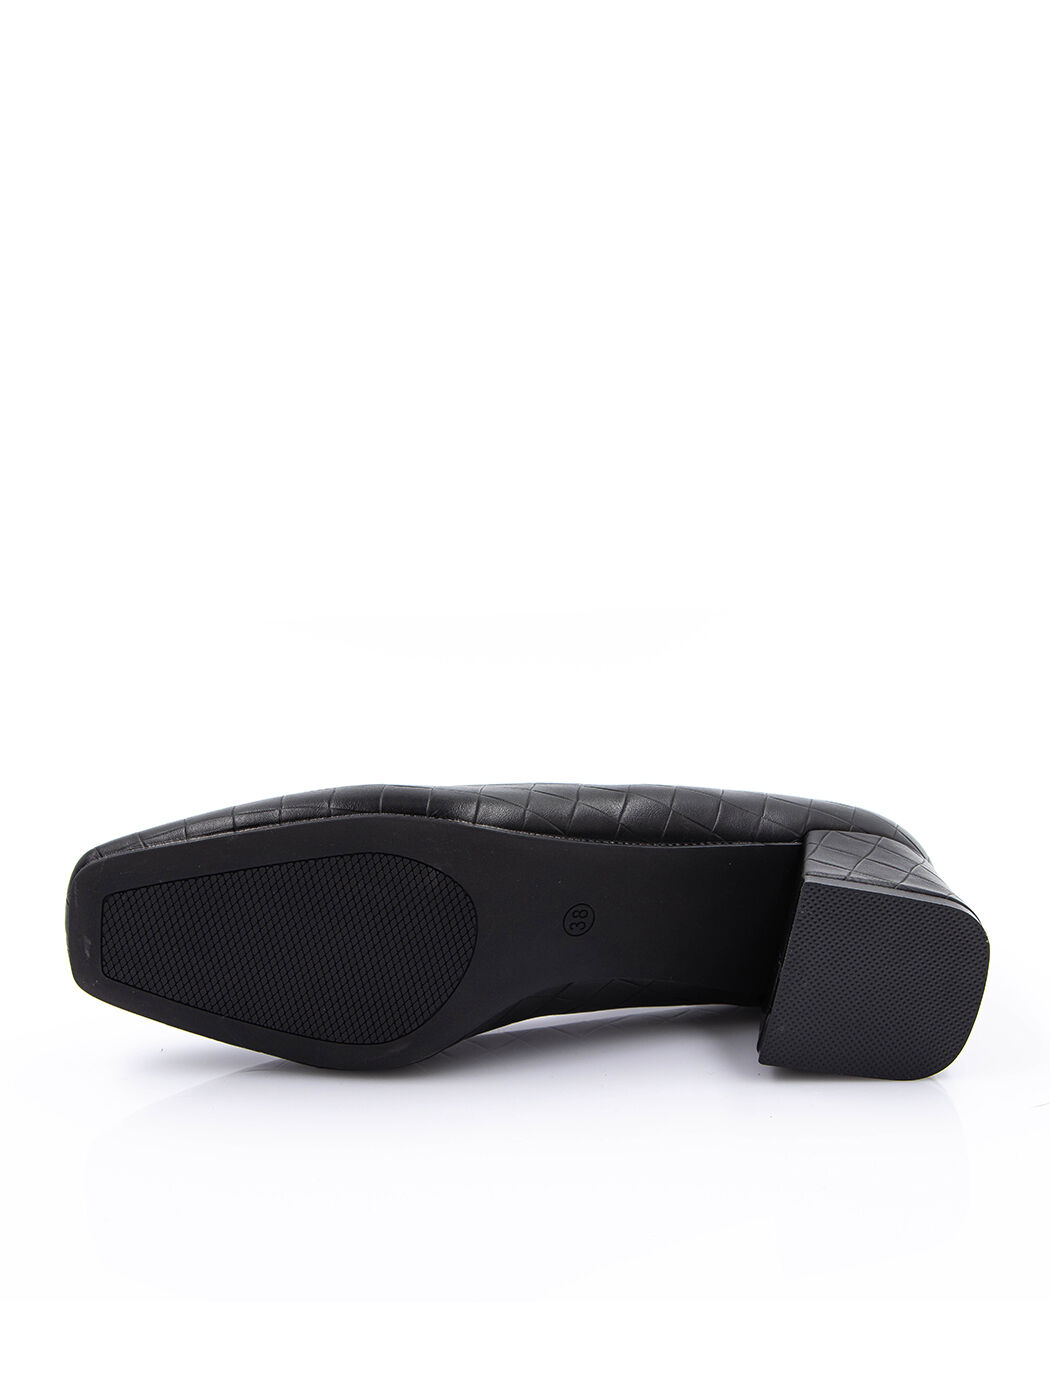 Туфли женские черные экокожа каблук устойчивый демисезон от производителя EM вид 2